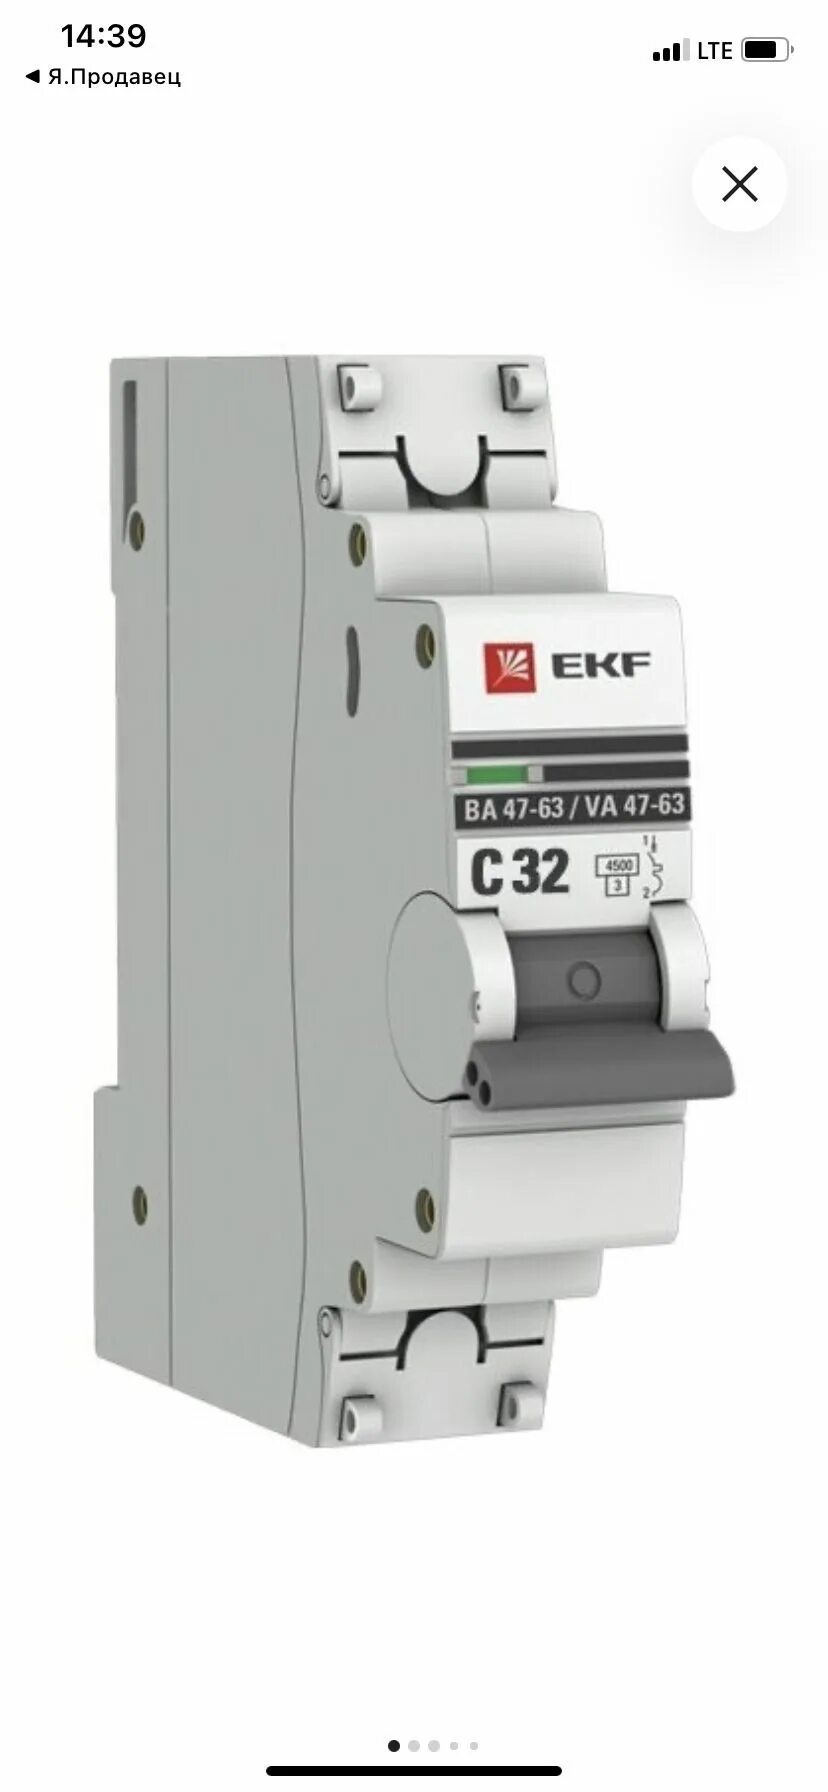 Автоматический выключатель 4p 25а (c) 4,5ka ва 47-63, EKF proxima. Выключатель EKF mcb4763. Автомат EKF c25. Автоматический выключатель EKF proxima ва47-63 4p c16 a 4.5 ka.